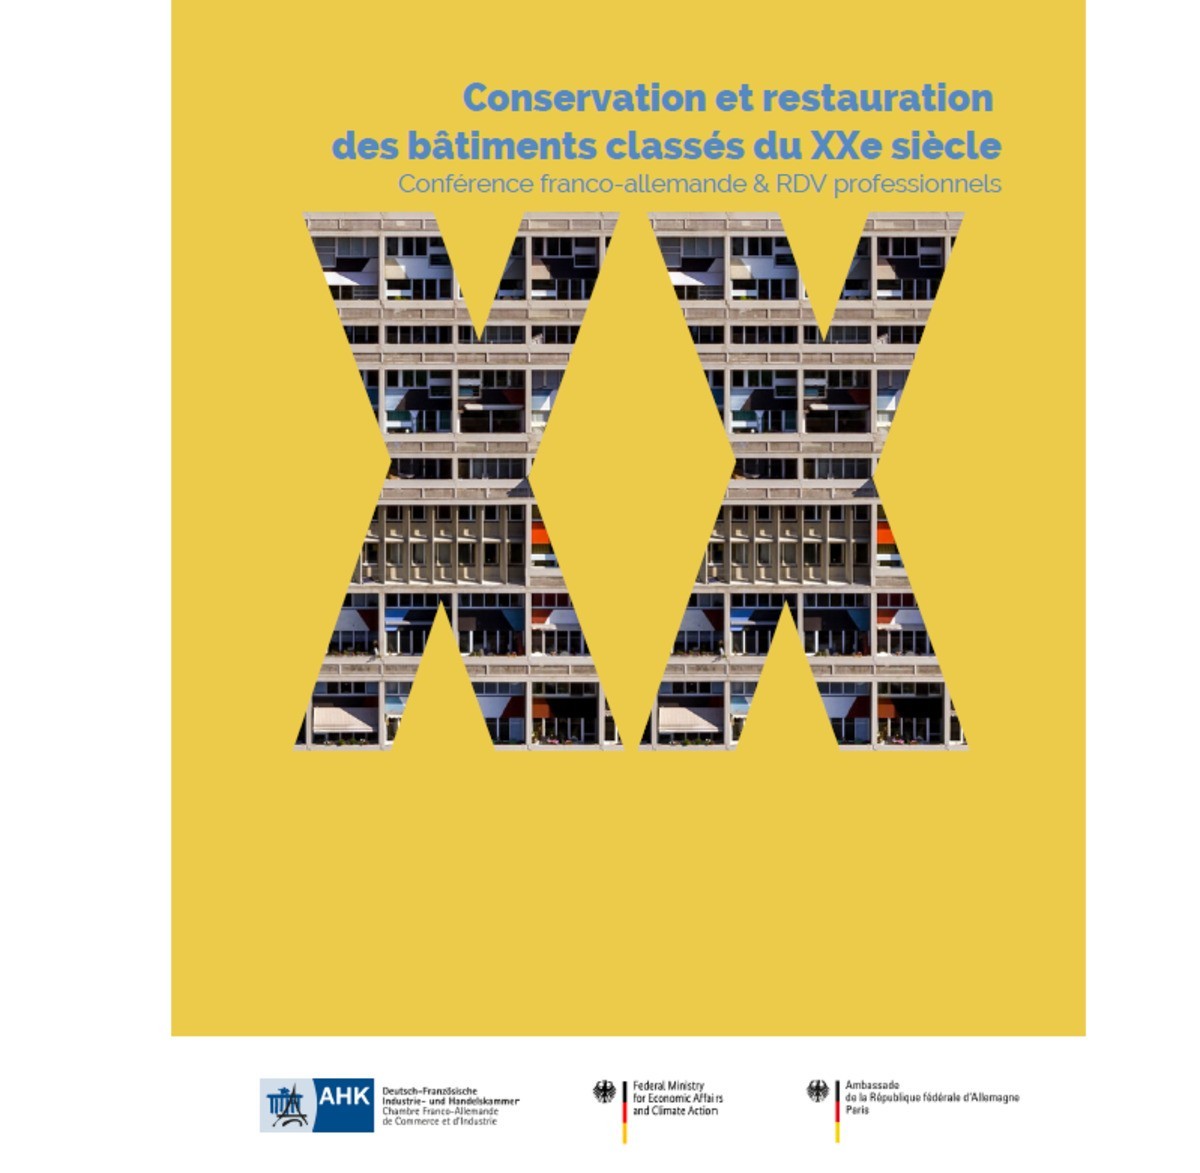 Conservation et restauration des bâtiments classés du XXe siècle en France et en Allemagne, le 14 juin 